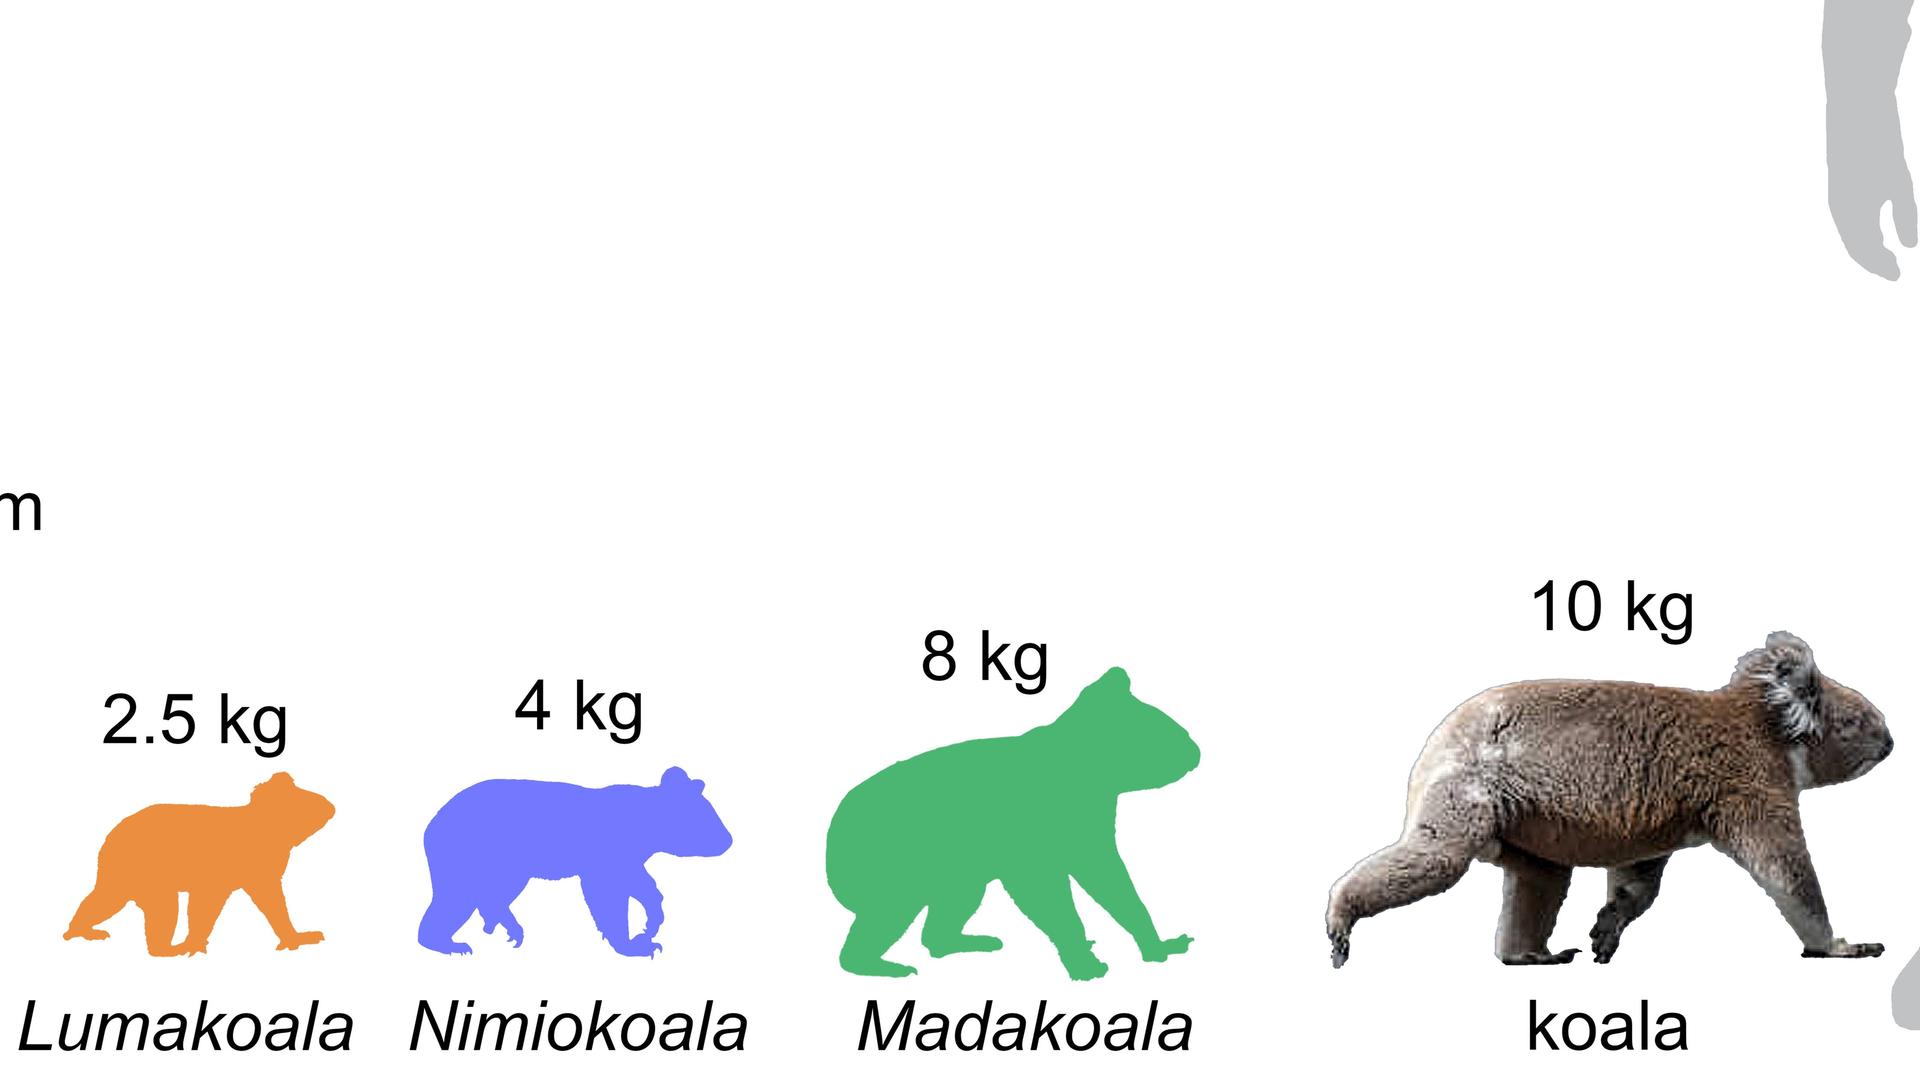 Größen-Schätzungen für Koalaarten, darunter der Lumakoala. Forscher haben im australischen Outback die Überreste dieser bisher unbekannten prähistorischen Koala-Art entdeckt, die vor 25 Millionen Jahren die Erde bevölkerte.